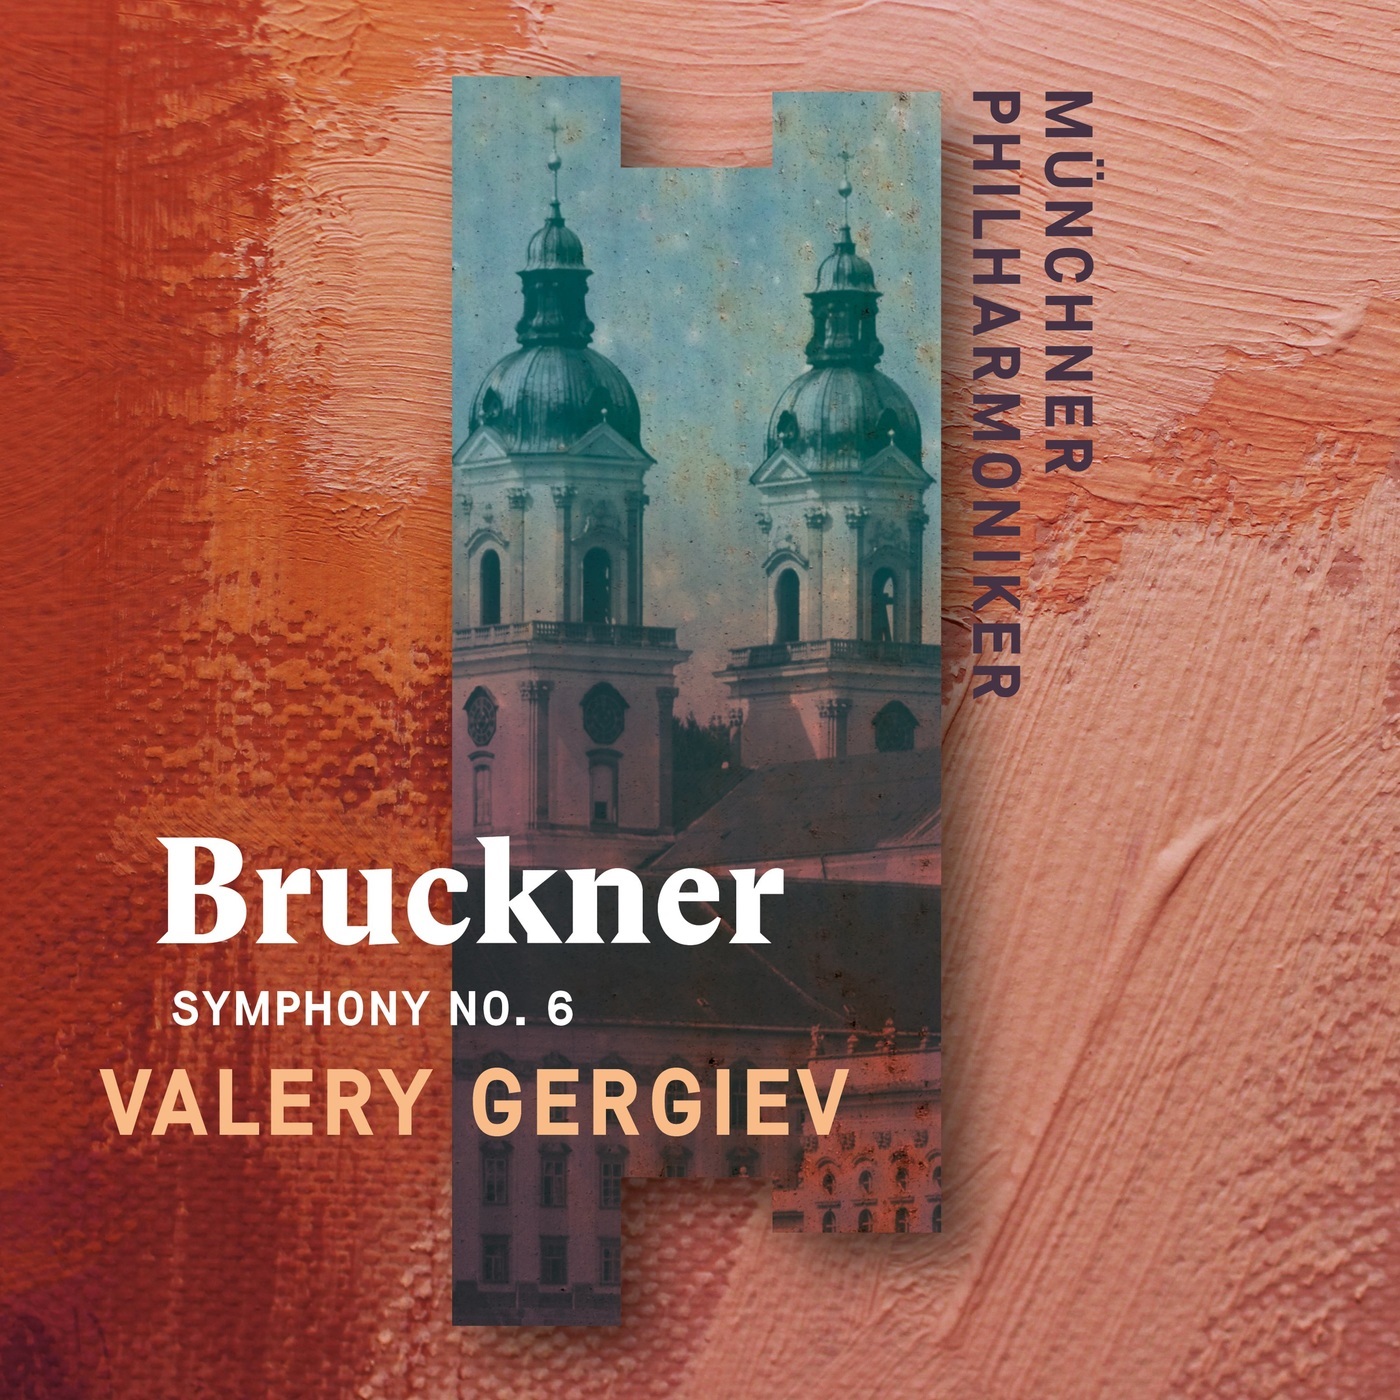 Valery Gergiev & Munich Philharmonic – Bruckner: Symphony No. 6 (2020) [FLAC 24bit/96kHz]